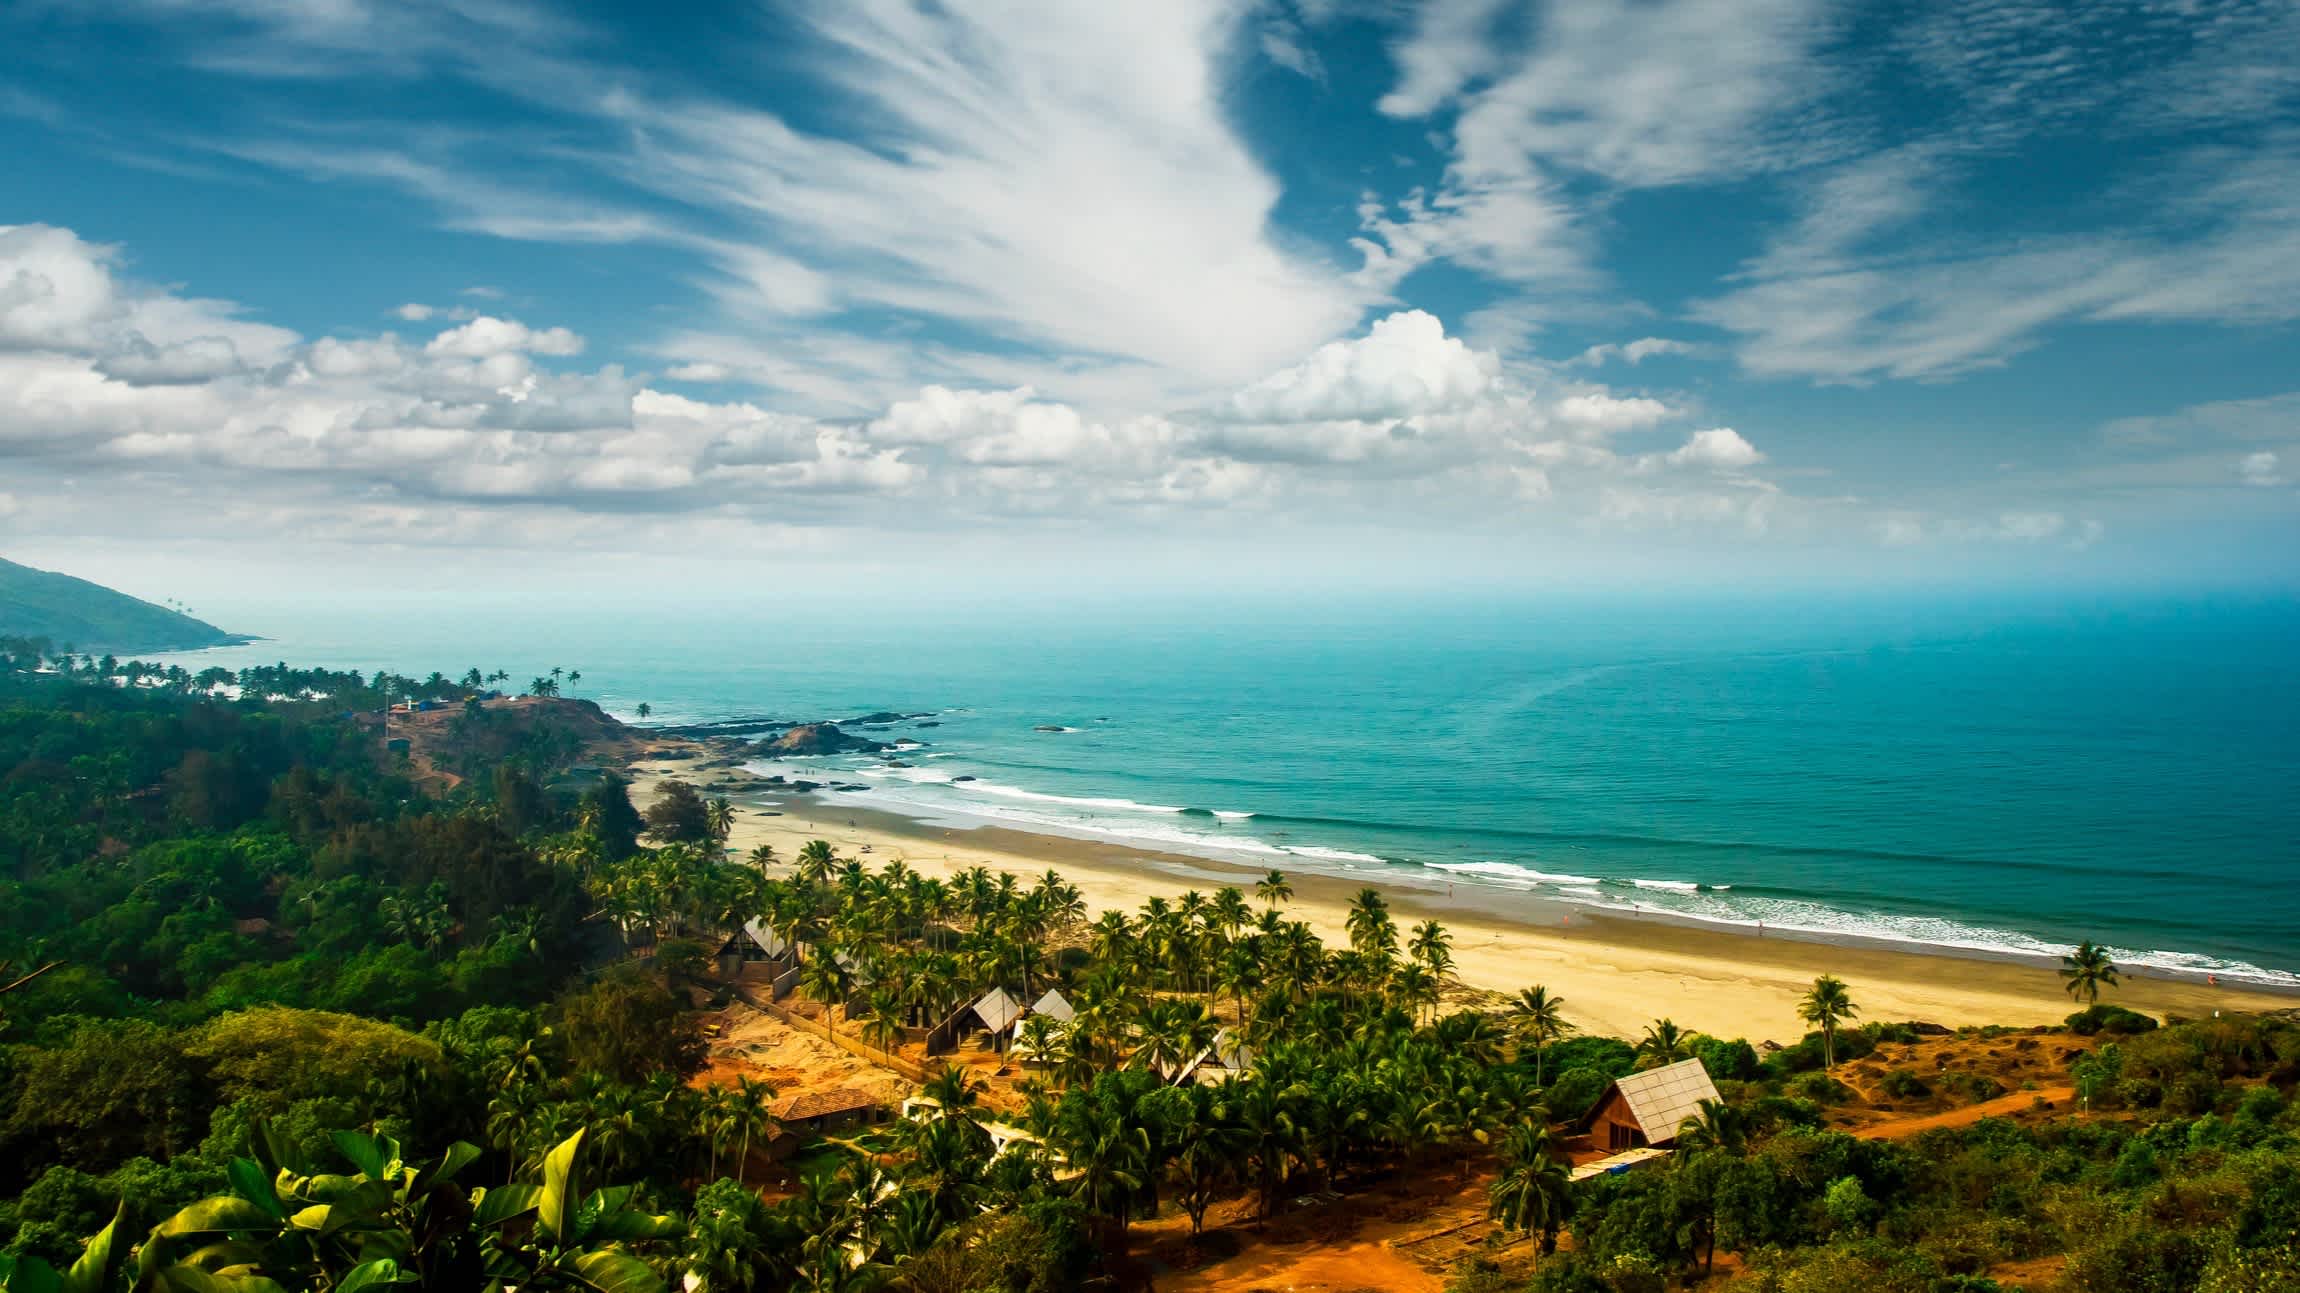 Luftaufnahme des Vagator Beach, Goa, Indien mit Palmen und dem Blauen Meer im Bild.